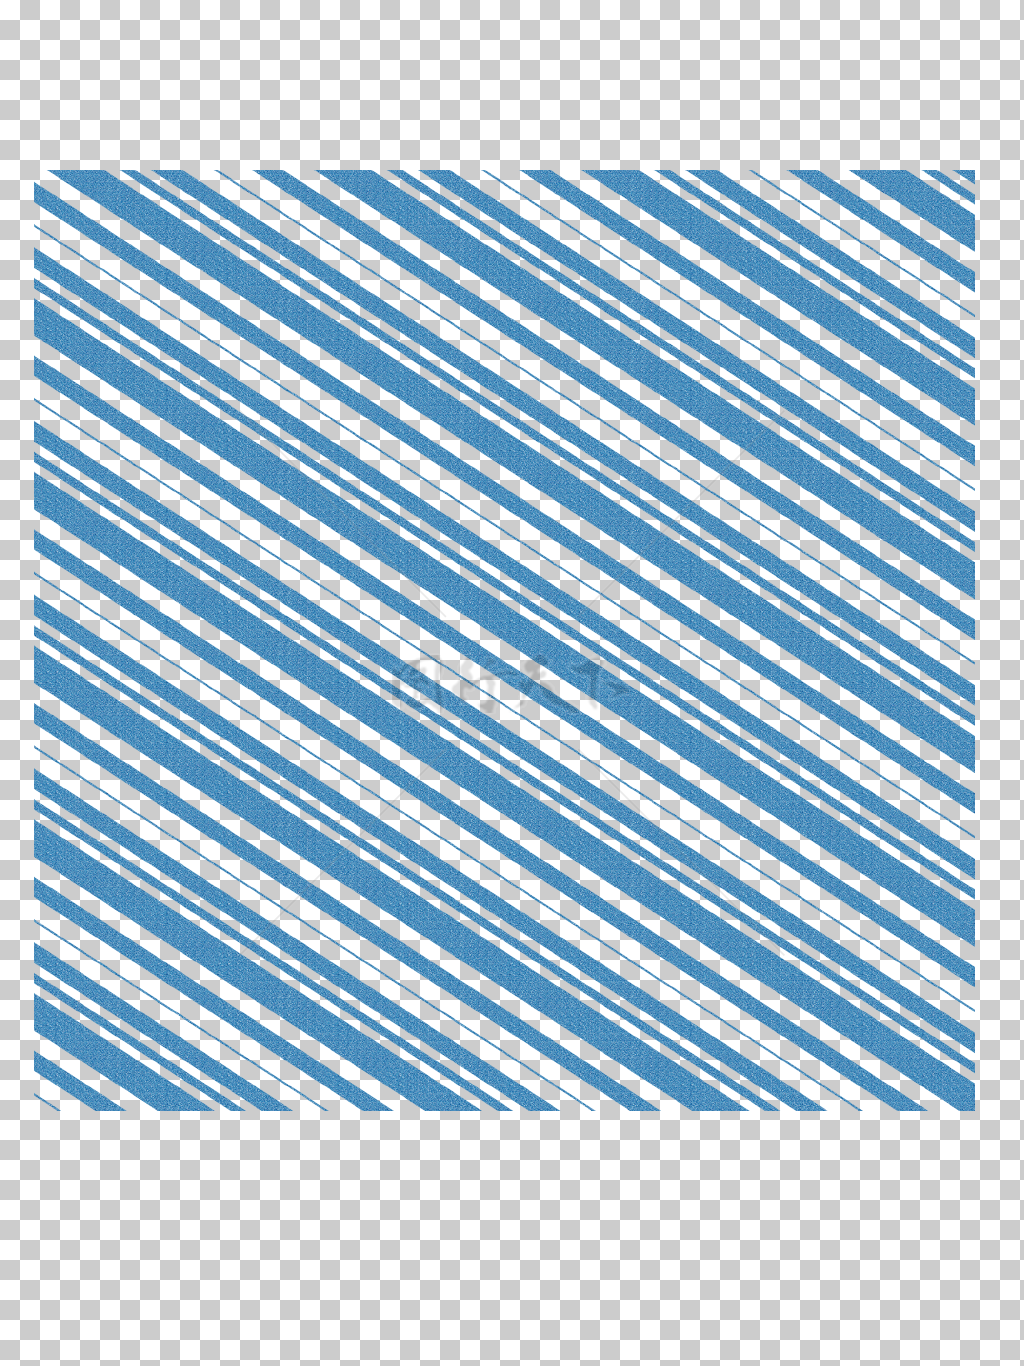 壁纸中国风 蓝色纹路 装饰 免扣图案  中国风元素  中国风设计 免扣元素  免扣图案  壁纸拼接